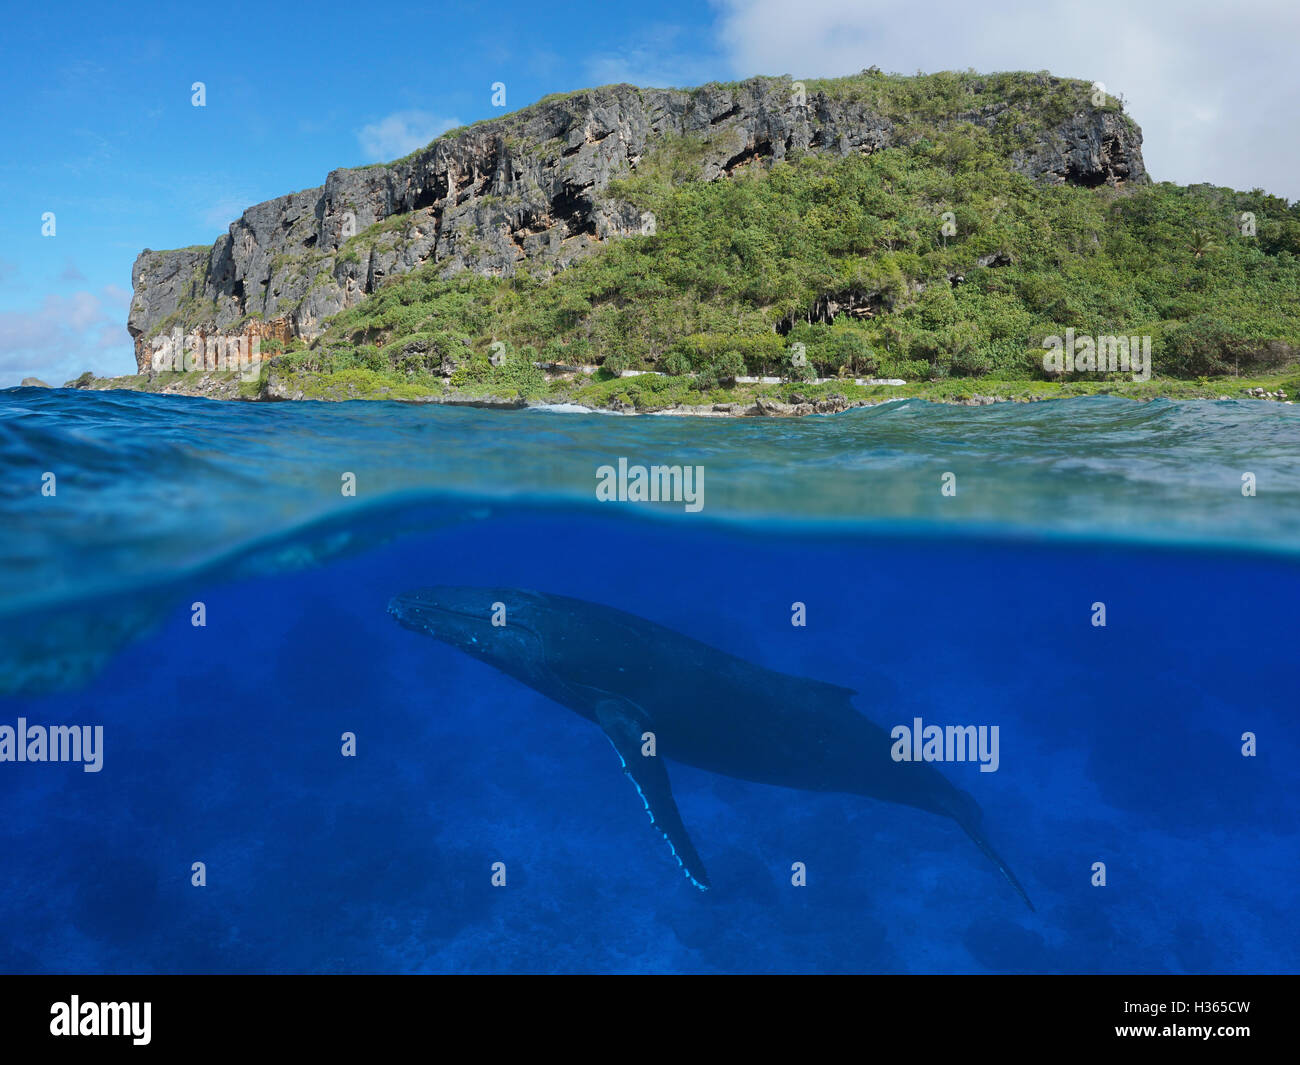 La vista suddivisa al di sopra e al di sotto della superficie del mare, costiere scogliera con una megattera subacquea, oceano pacifico, Rurutu island Foto Stock